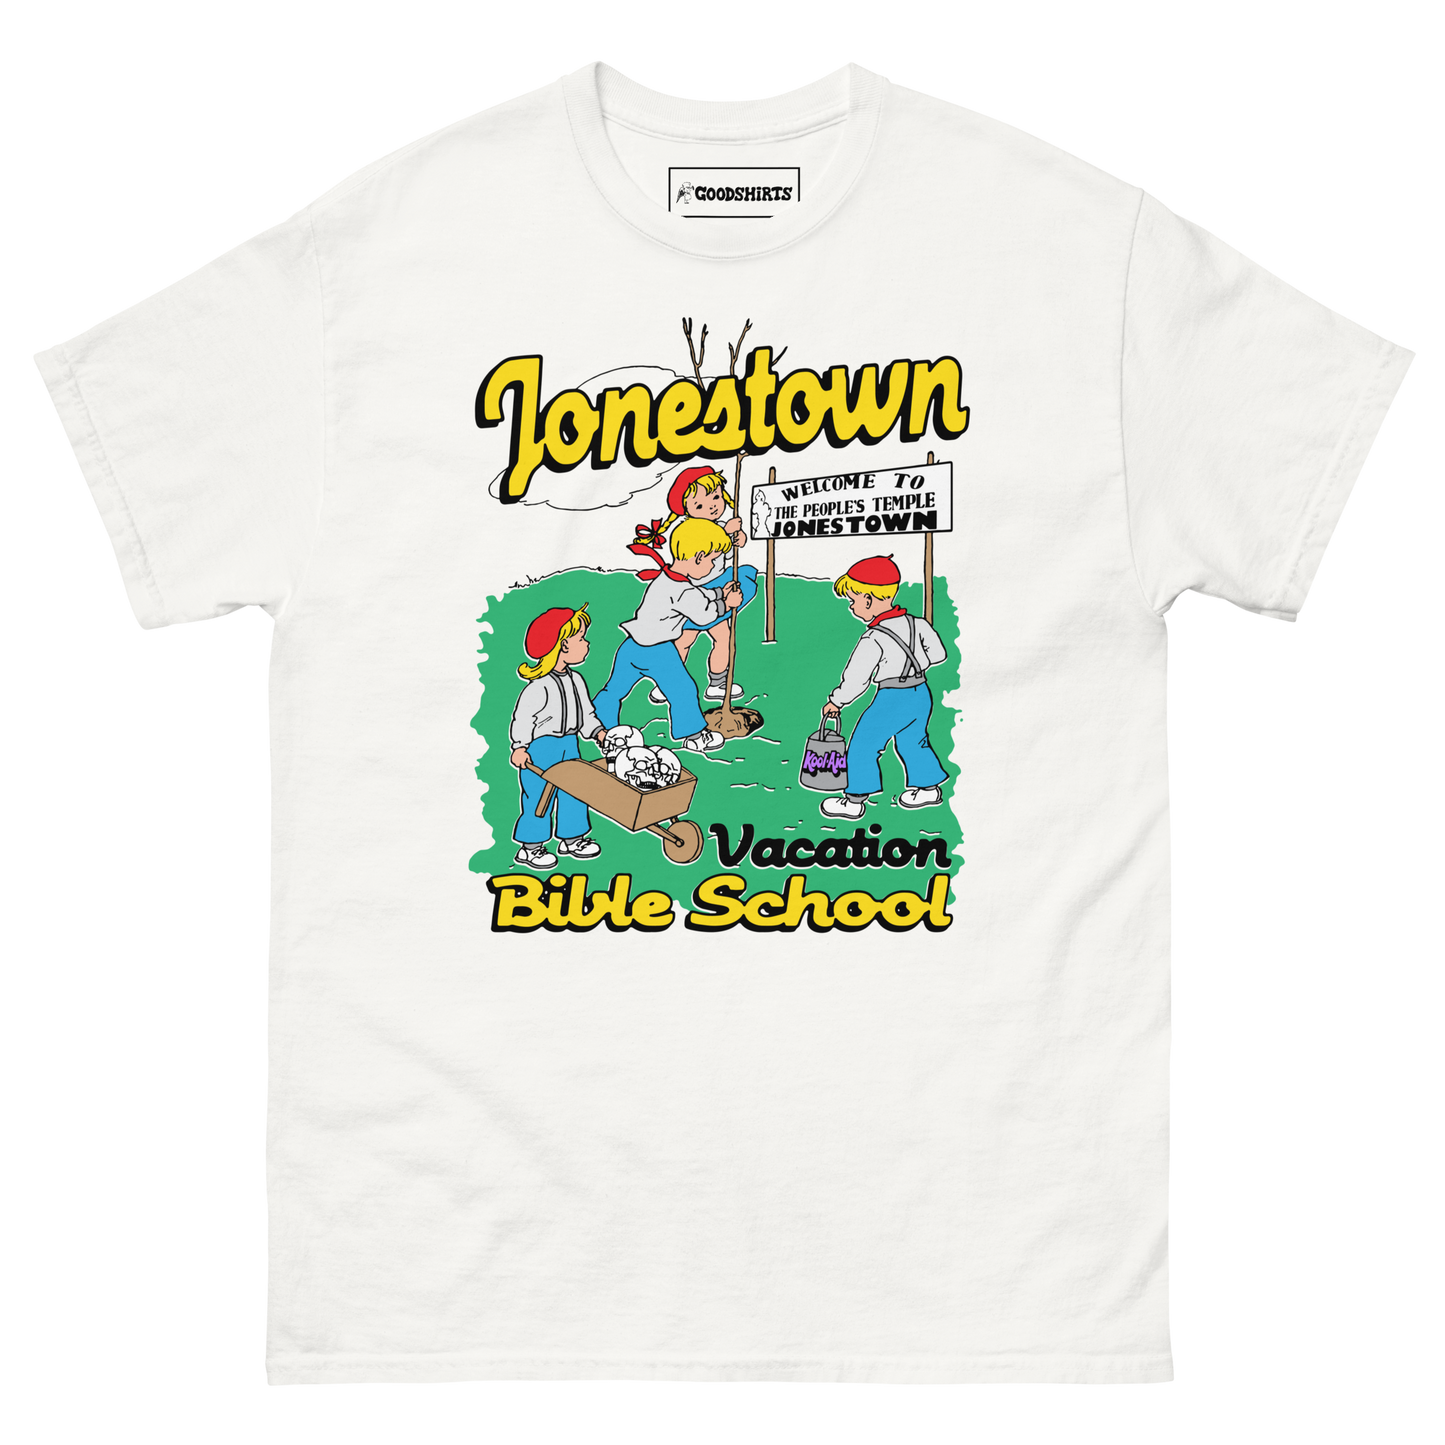 Jonestown Vacation Bible School.